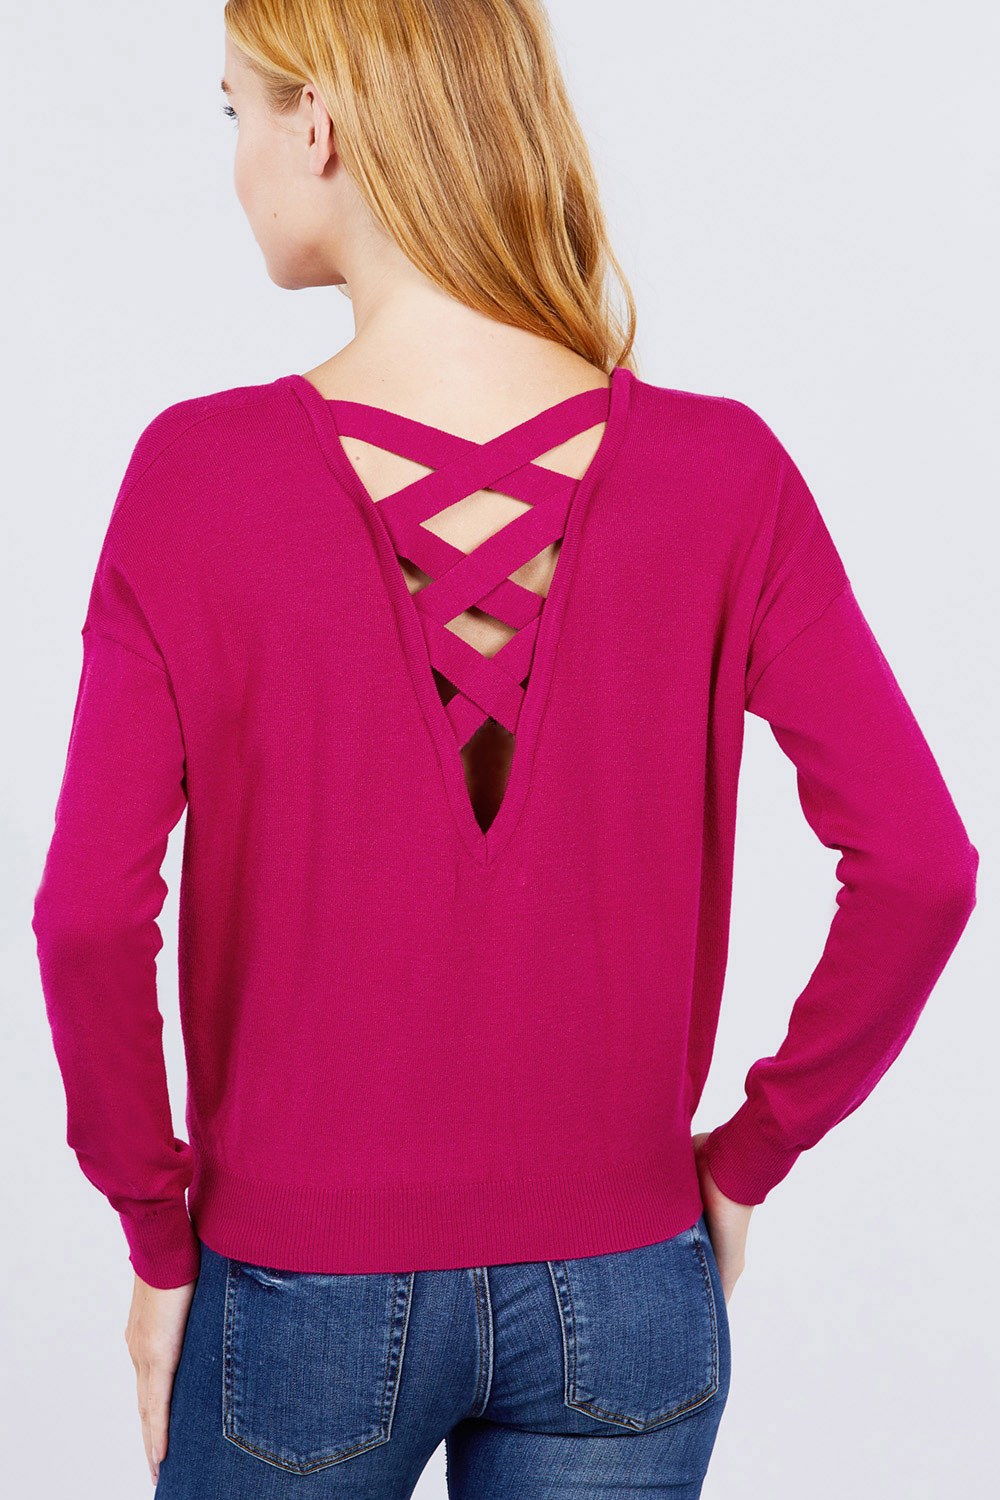 Women's V-neck Back Cross Sweater